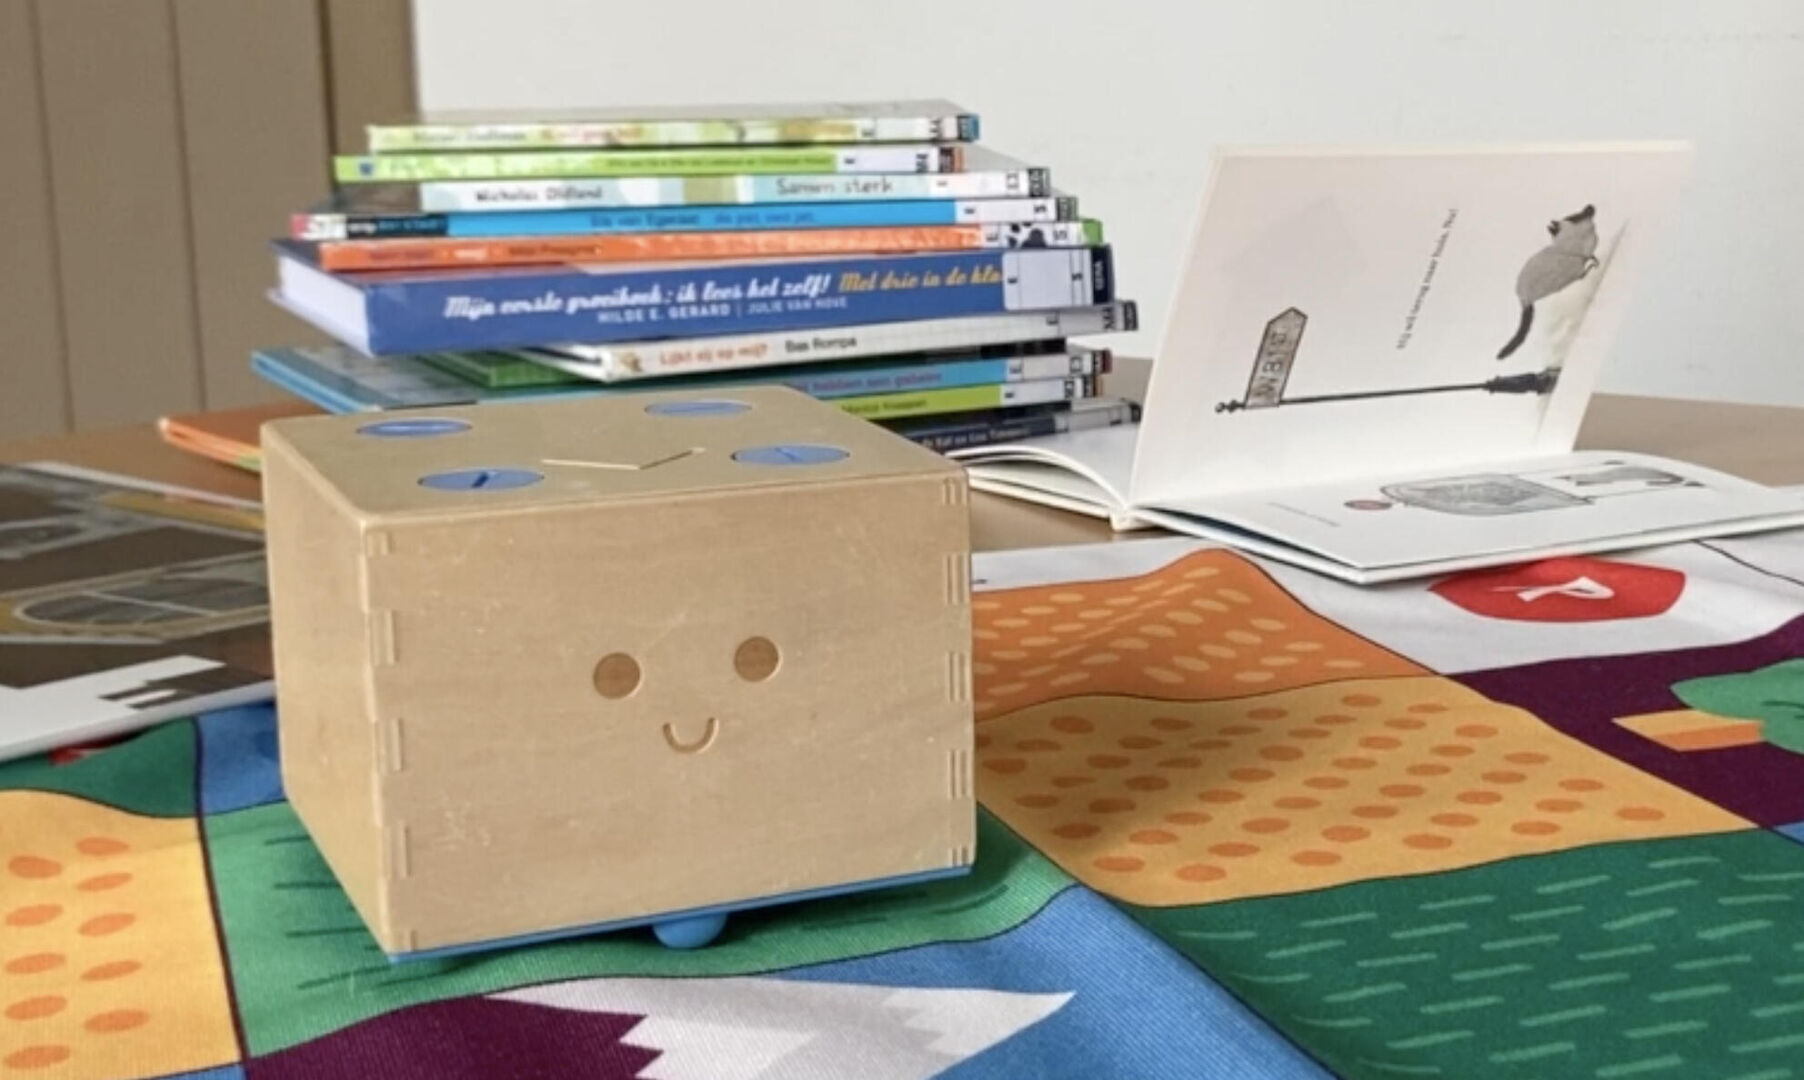 Robot Cubetto maakt verhalen